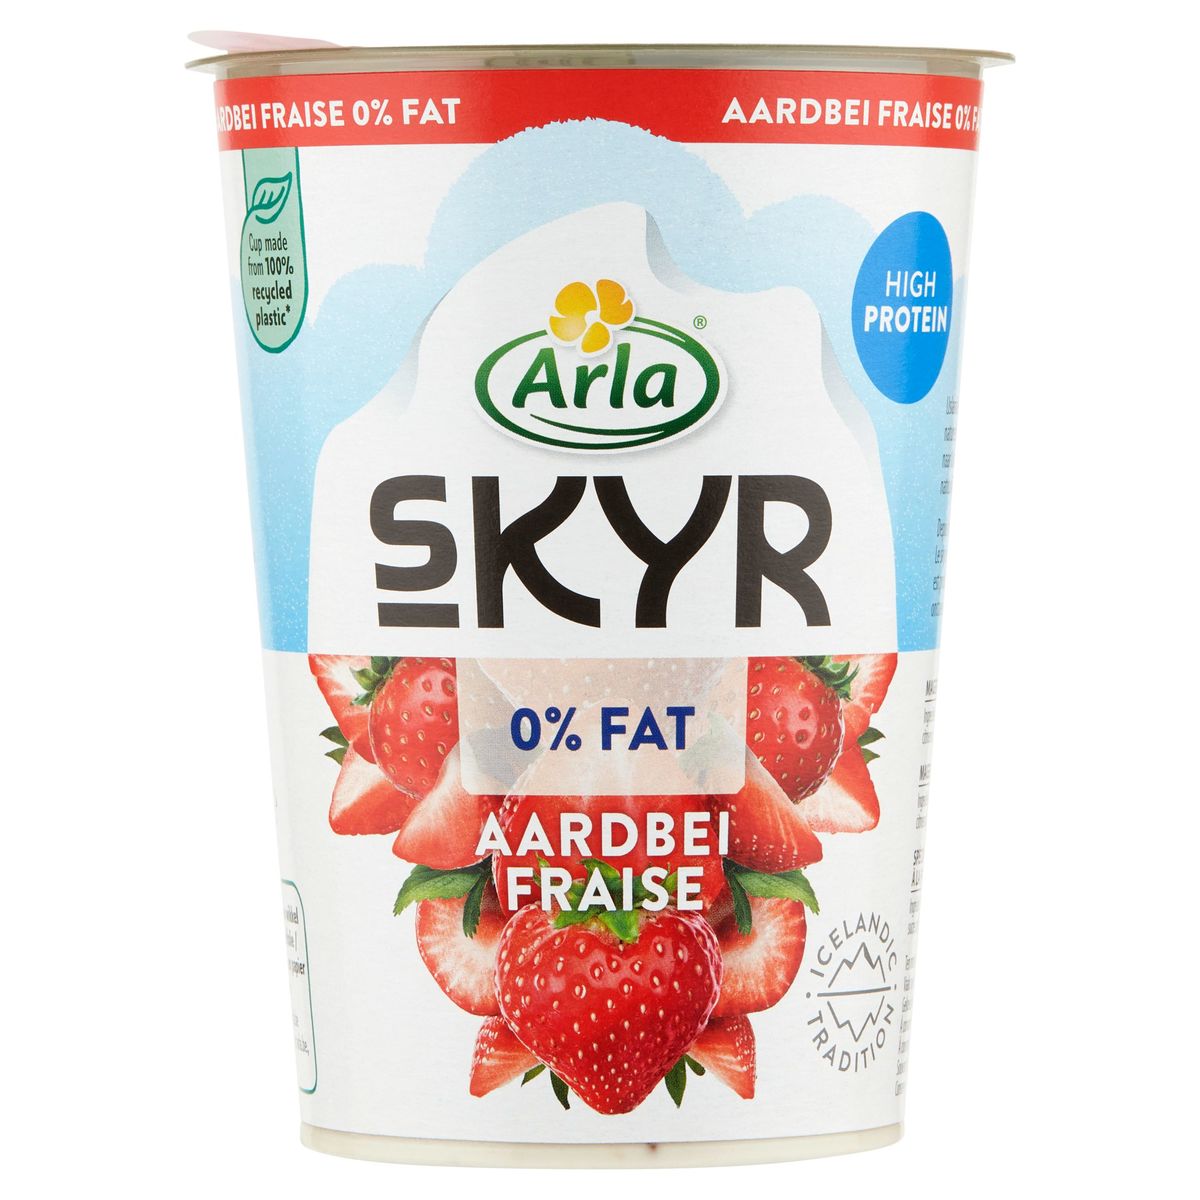 Arla Skyr Aardbei 0% Fat 450 g